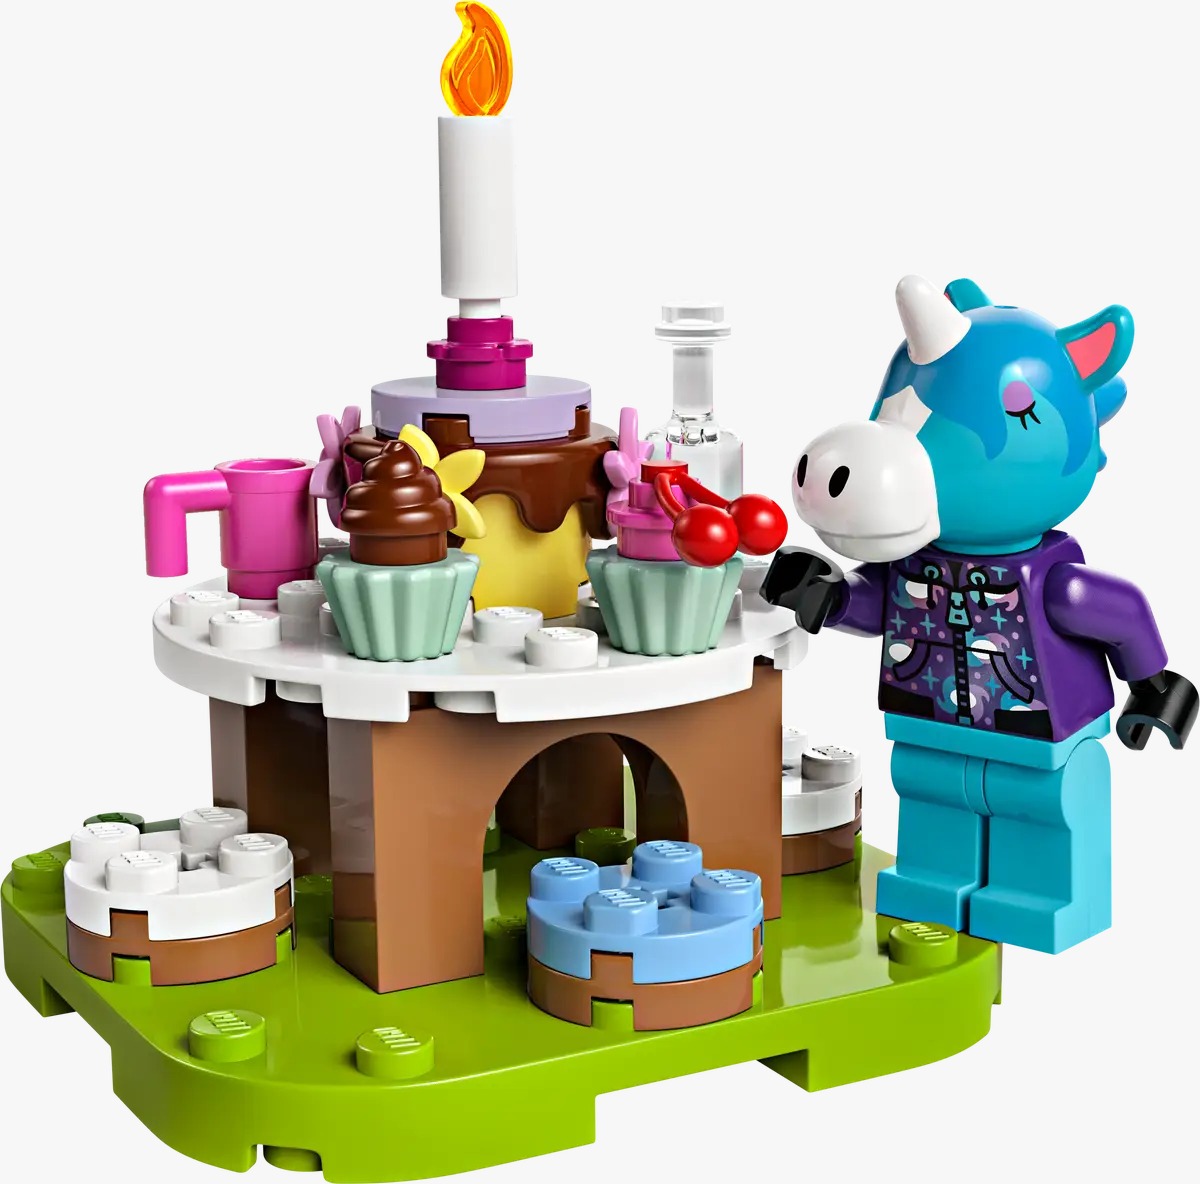 LEGO Animal Crossing: ¡Conoce los 5 nuevos sets! 11